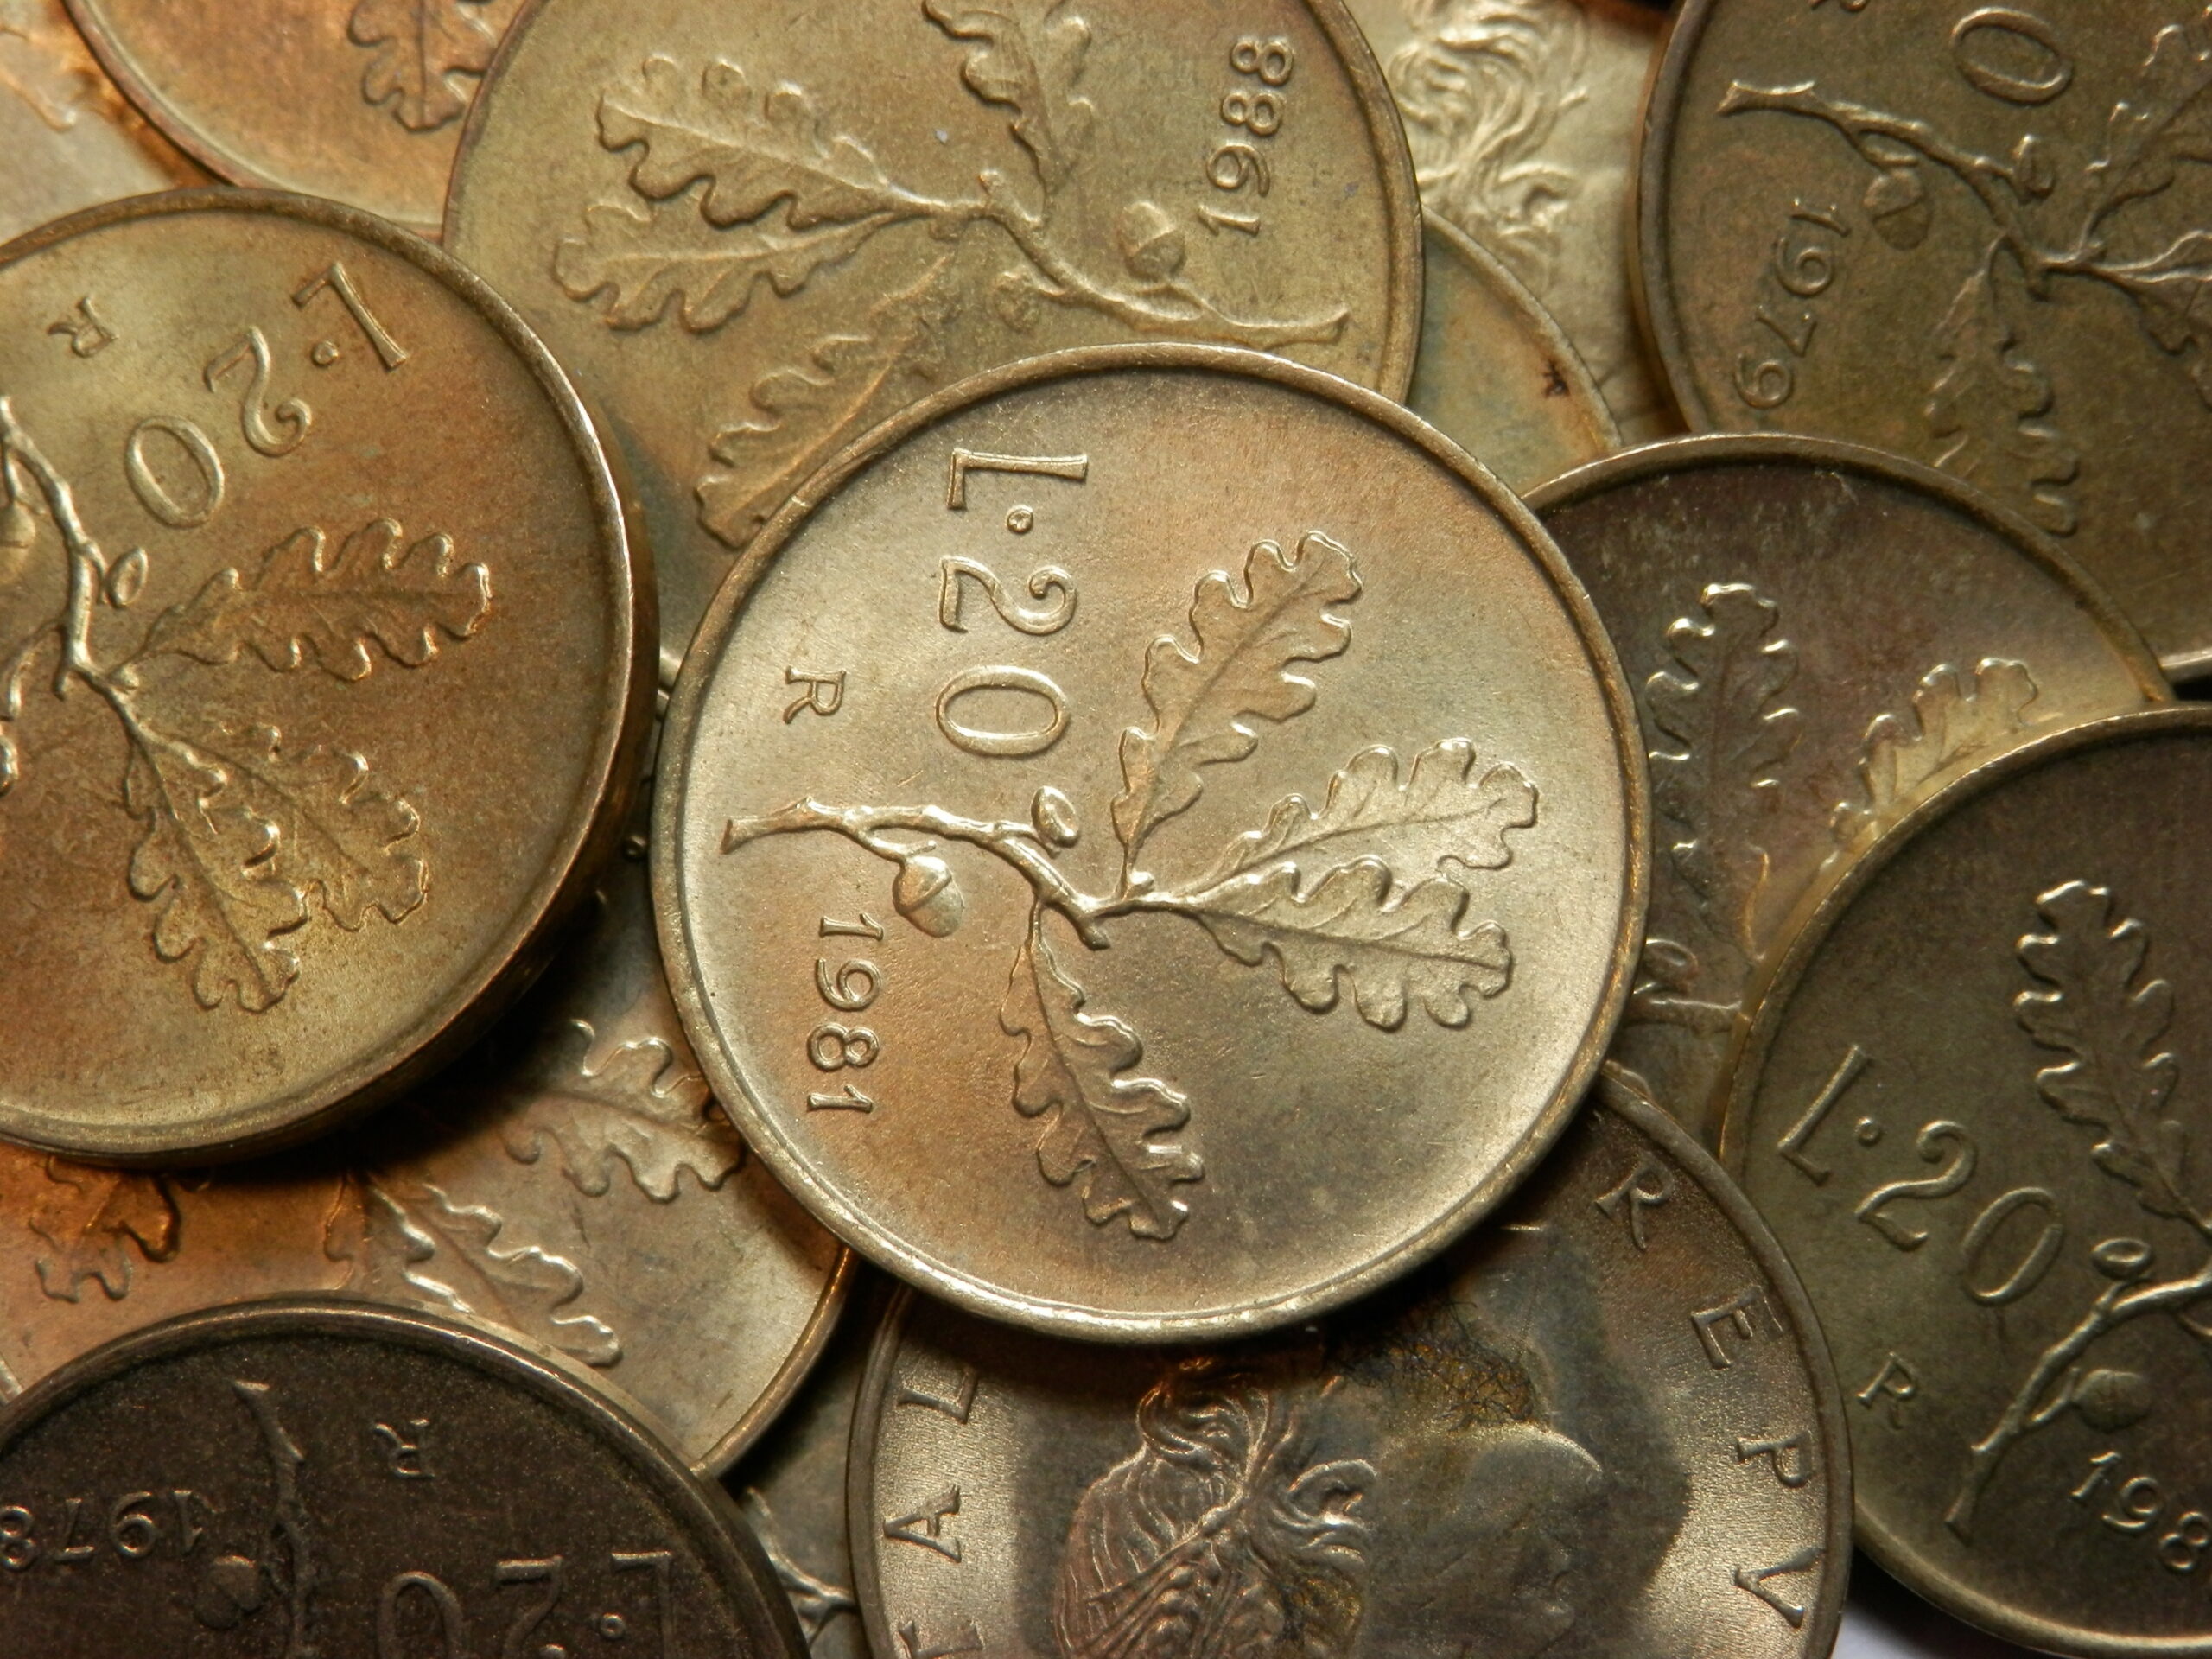 Monete rare: i collezionisti pagano migliaia di euro per questa 20 lire, controlla tra le tue